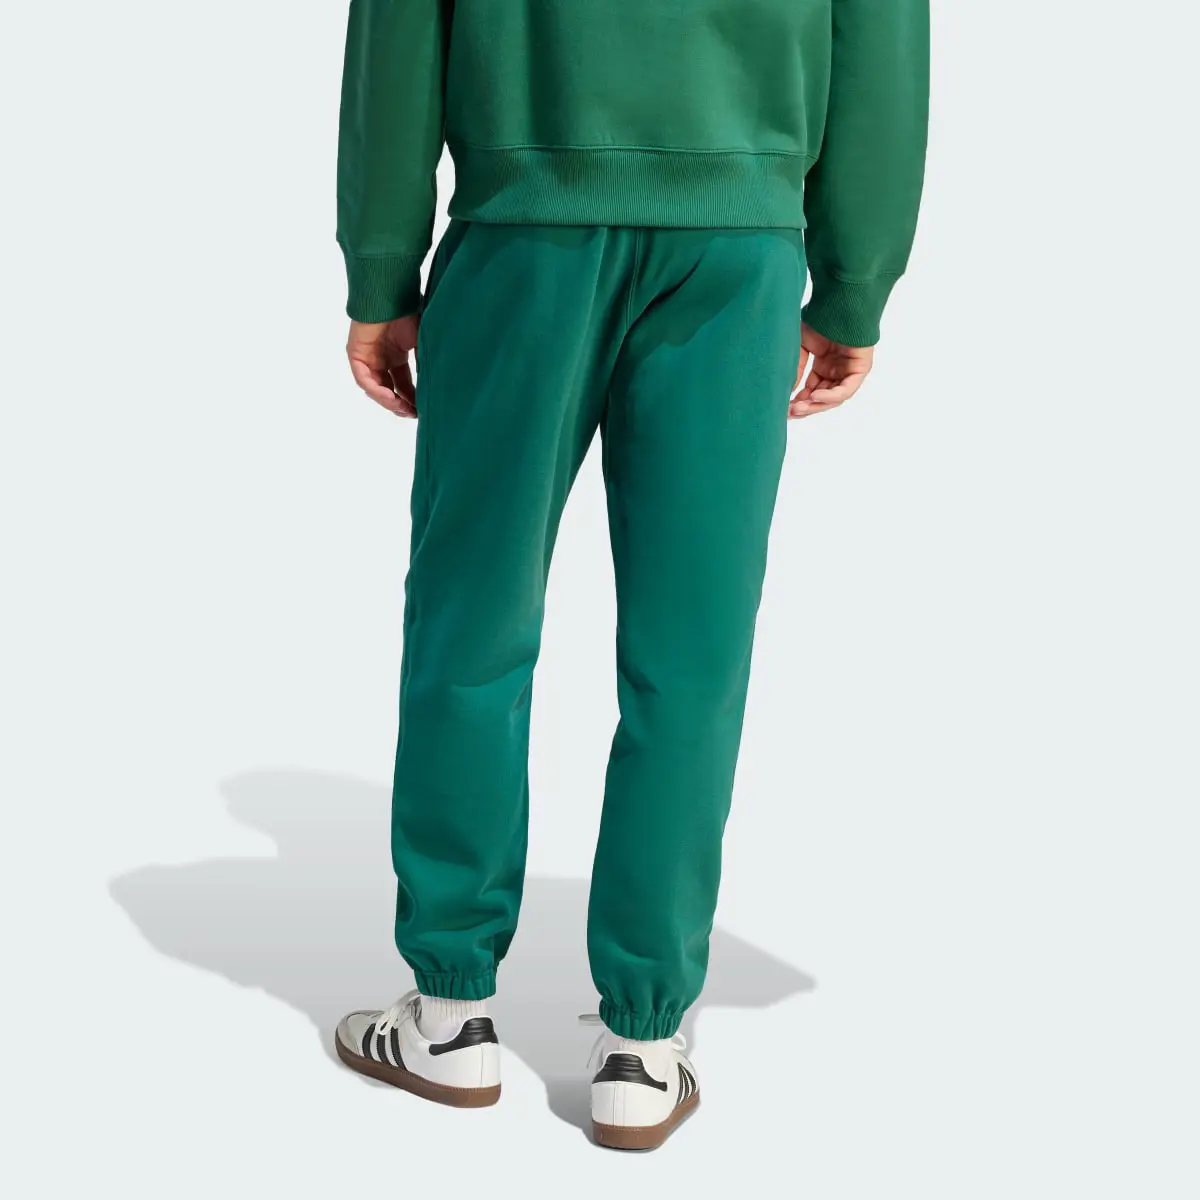 Adidas Premium Essentials Sweat Pants. 2